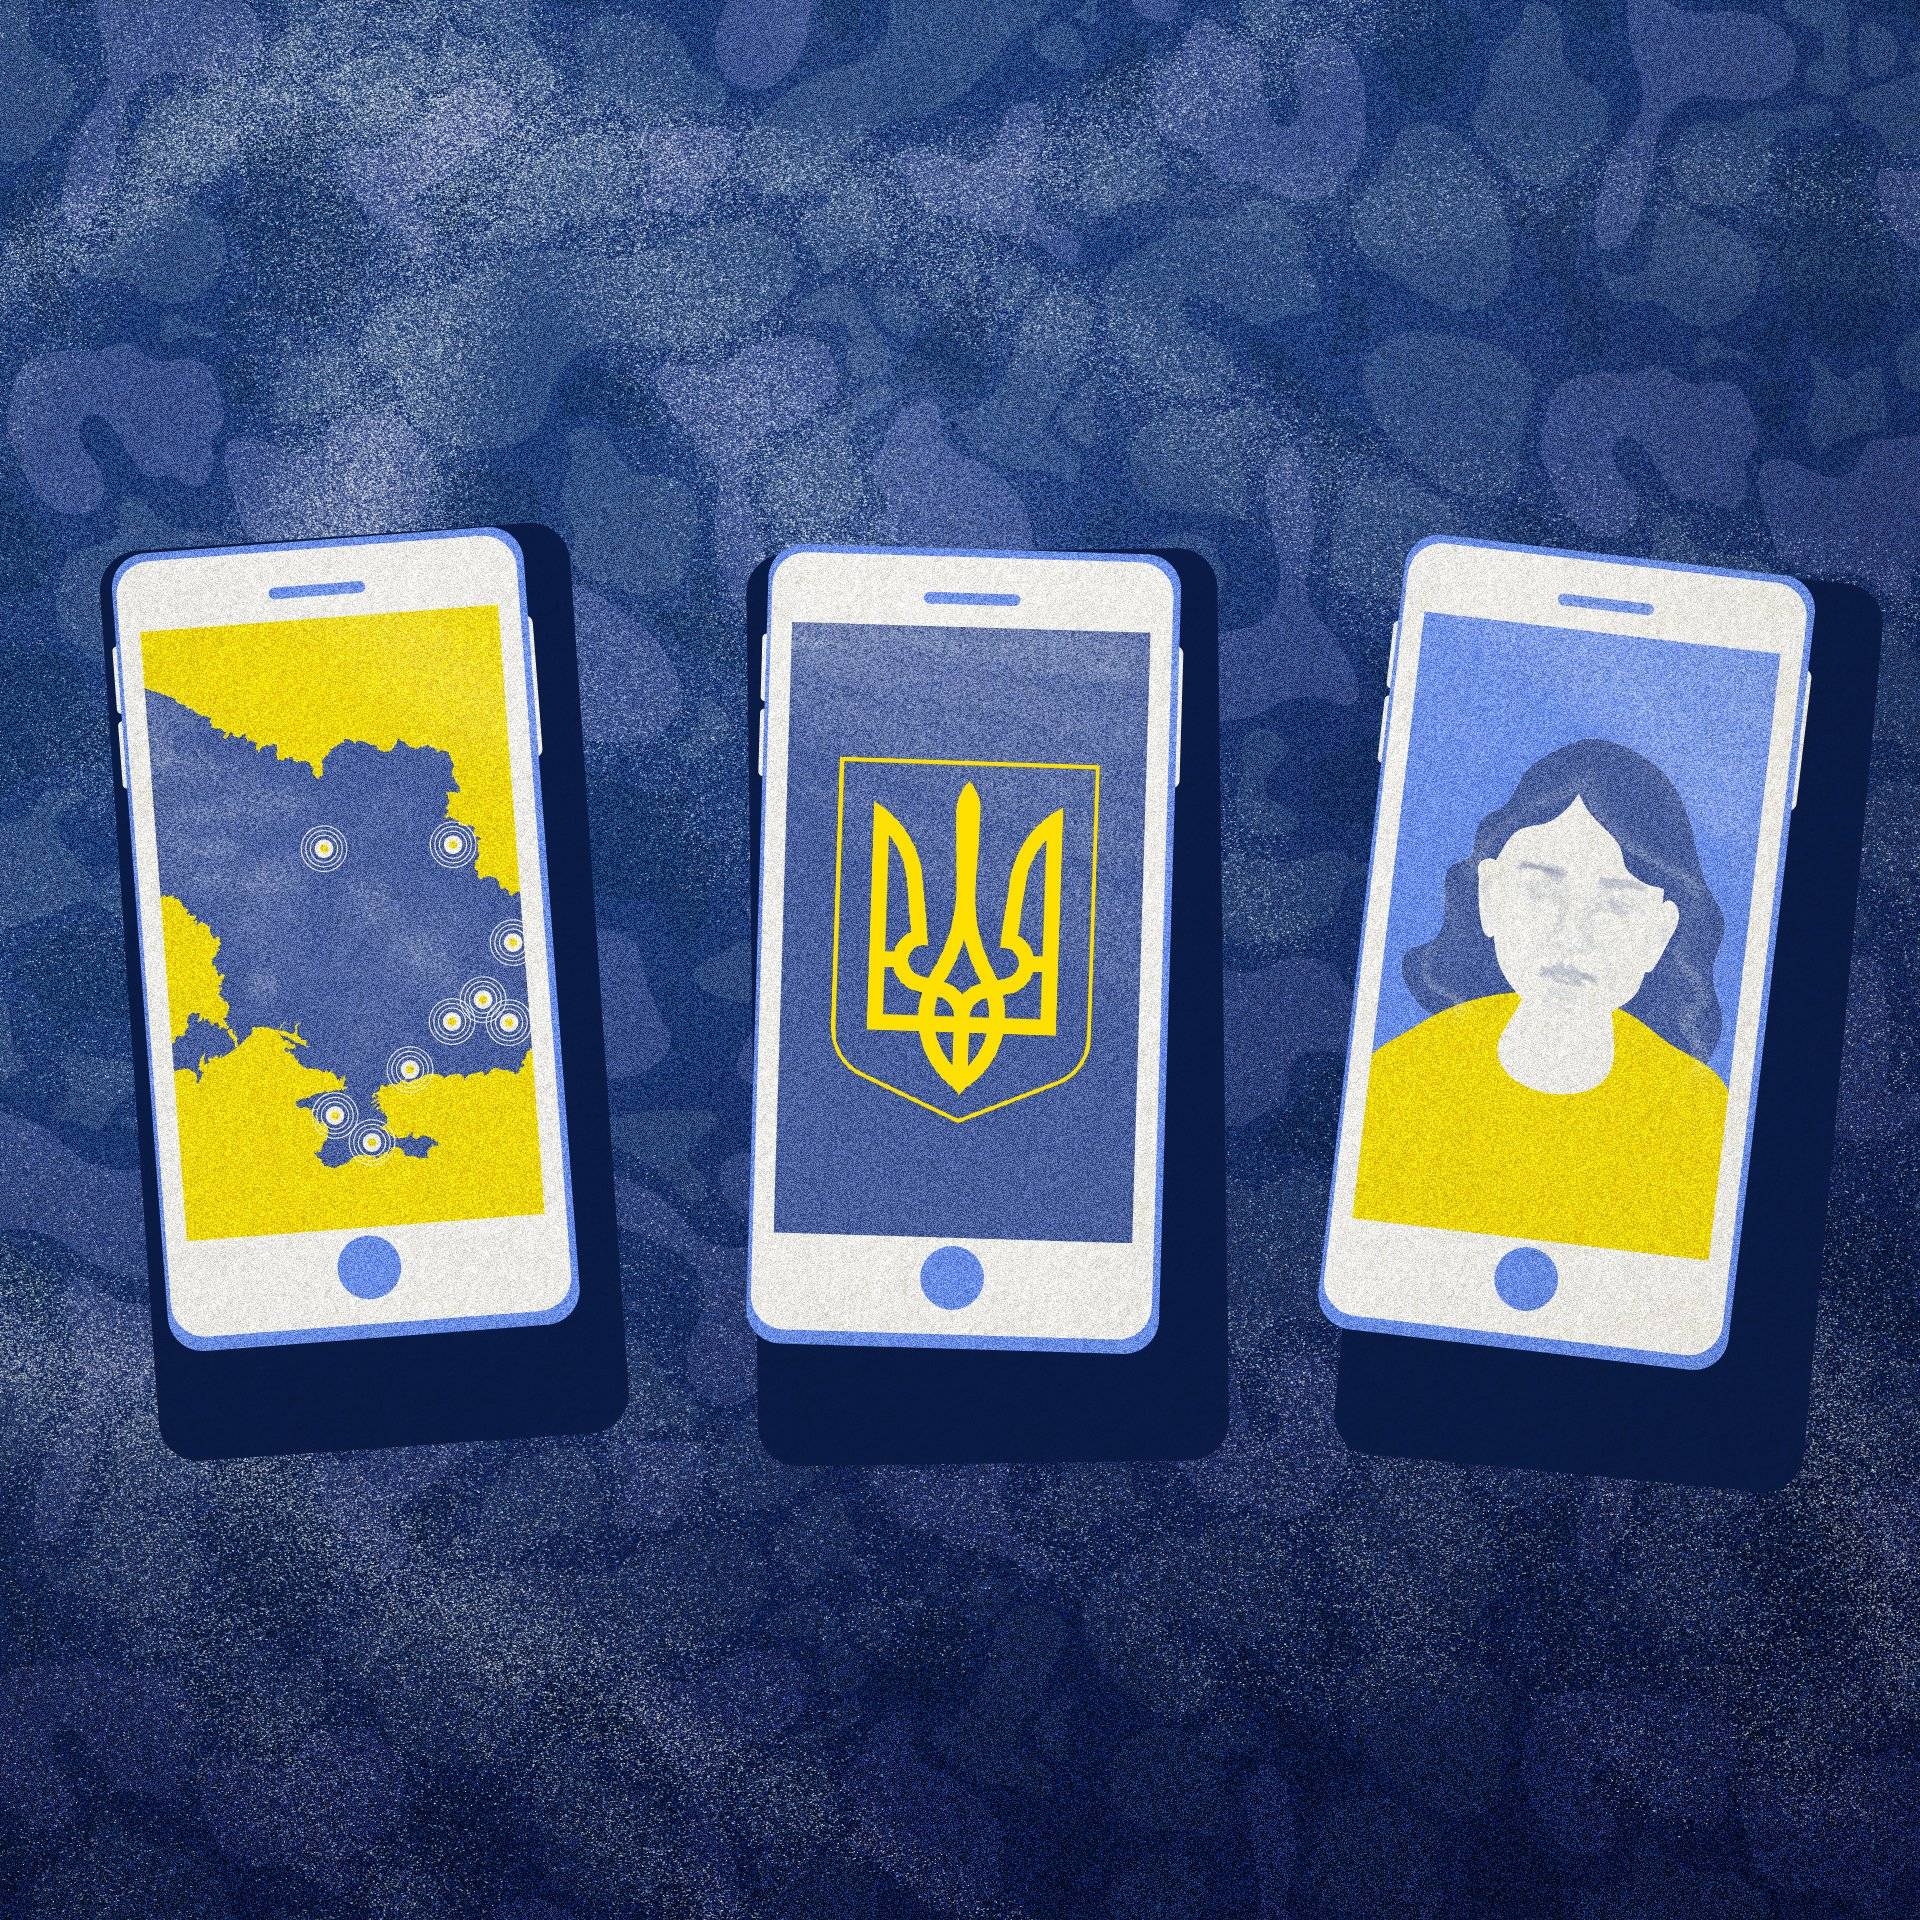 ilustracja przedstawia trzy smartfony ze zdjeciami w barwach Ukrainy